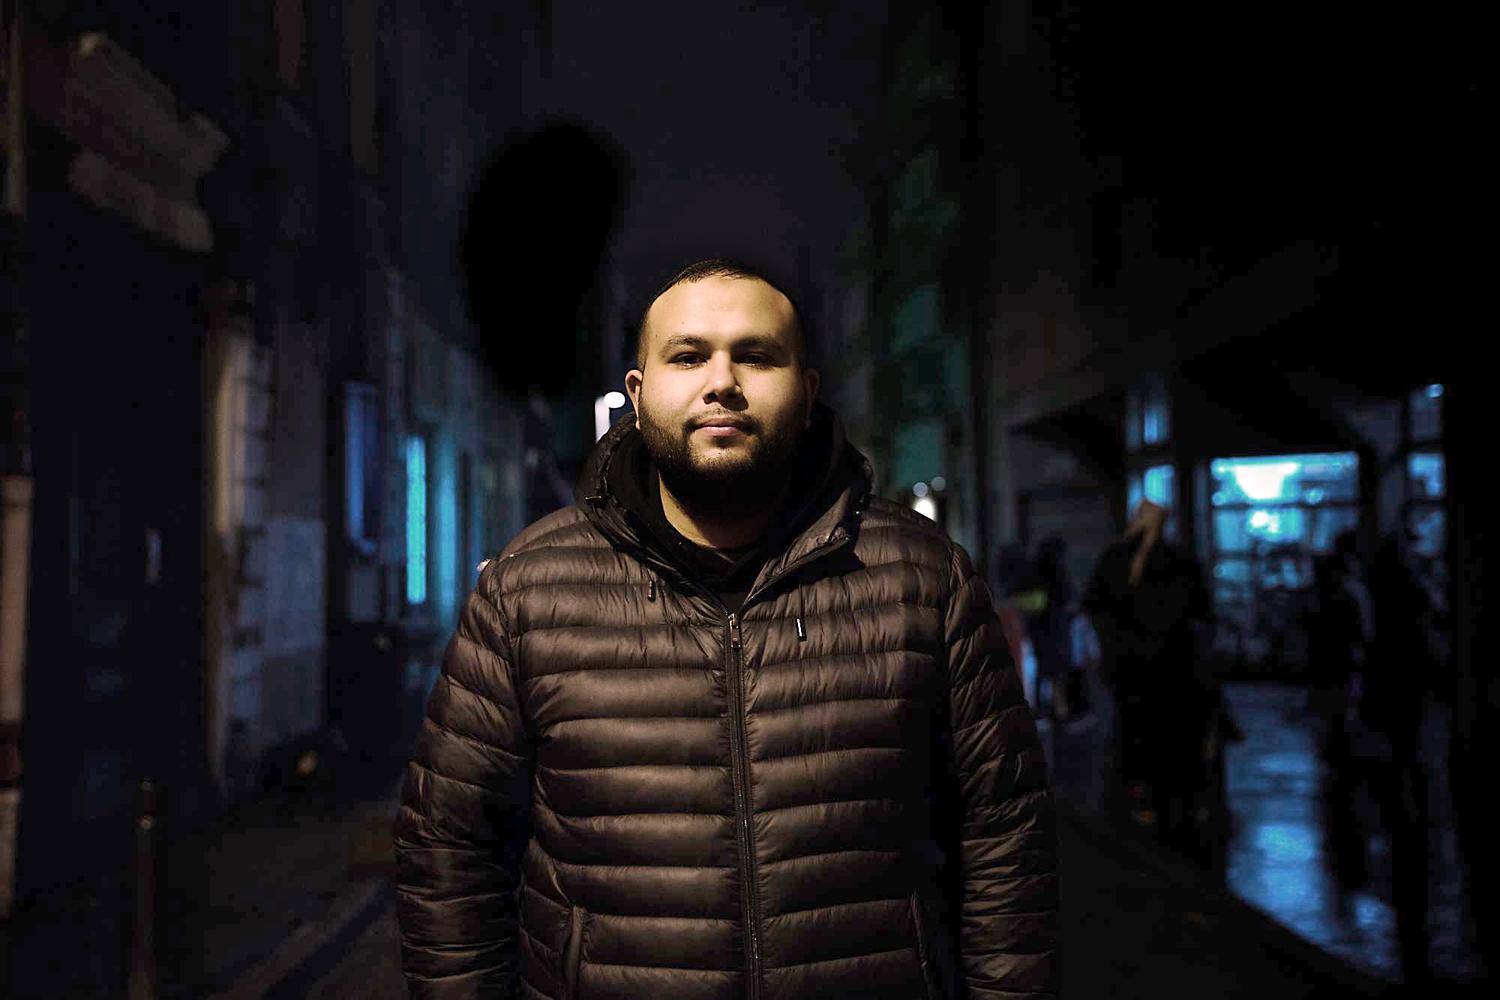 Anasse Kazib: „Die Bourgeoisie stört es nicht, dass ich Marokkaner bin, sondern ein revolutionärer Marxist“